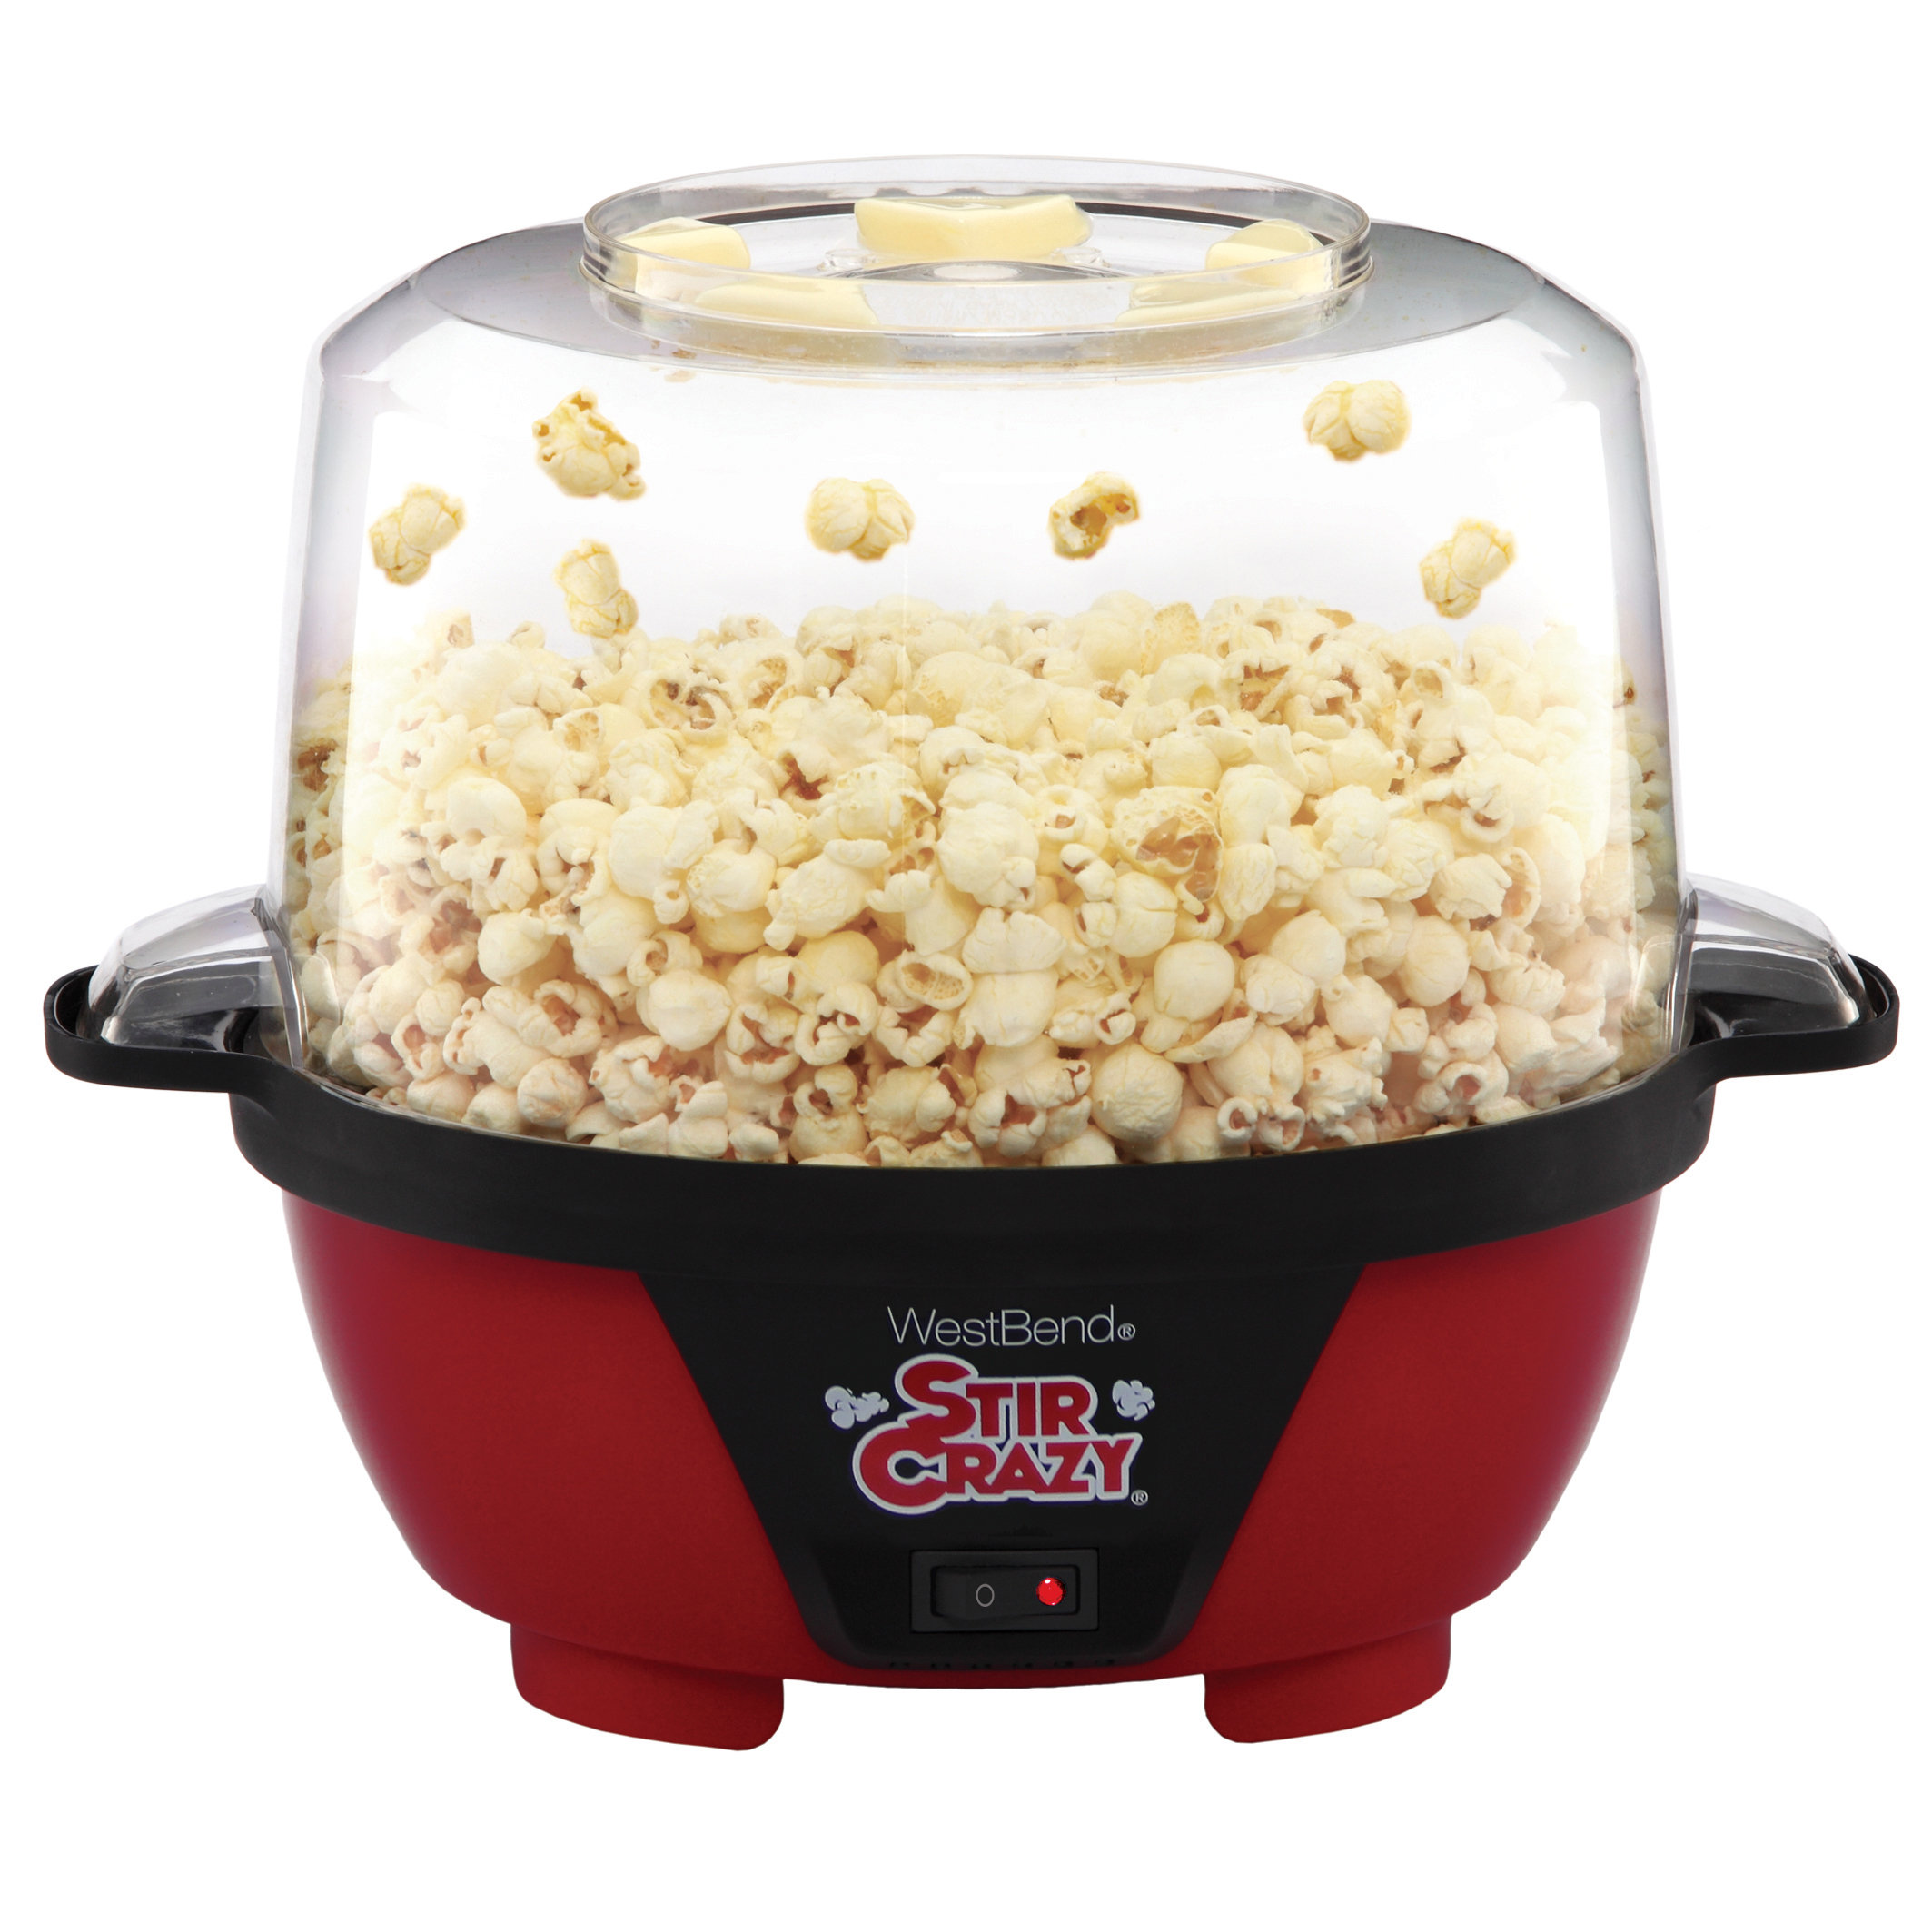 West Bend Air Crazy 4 qt. Hot Air Popcorn Machine Red